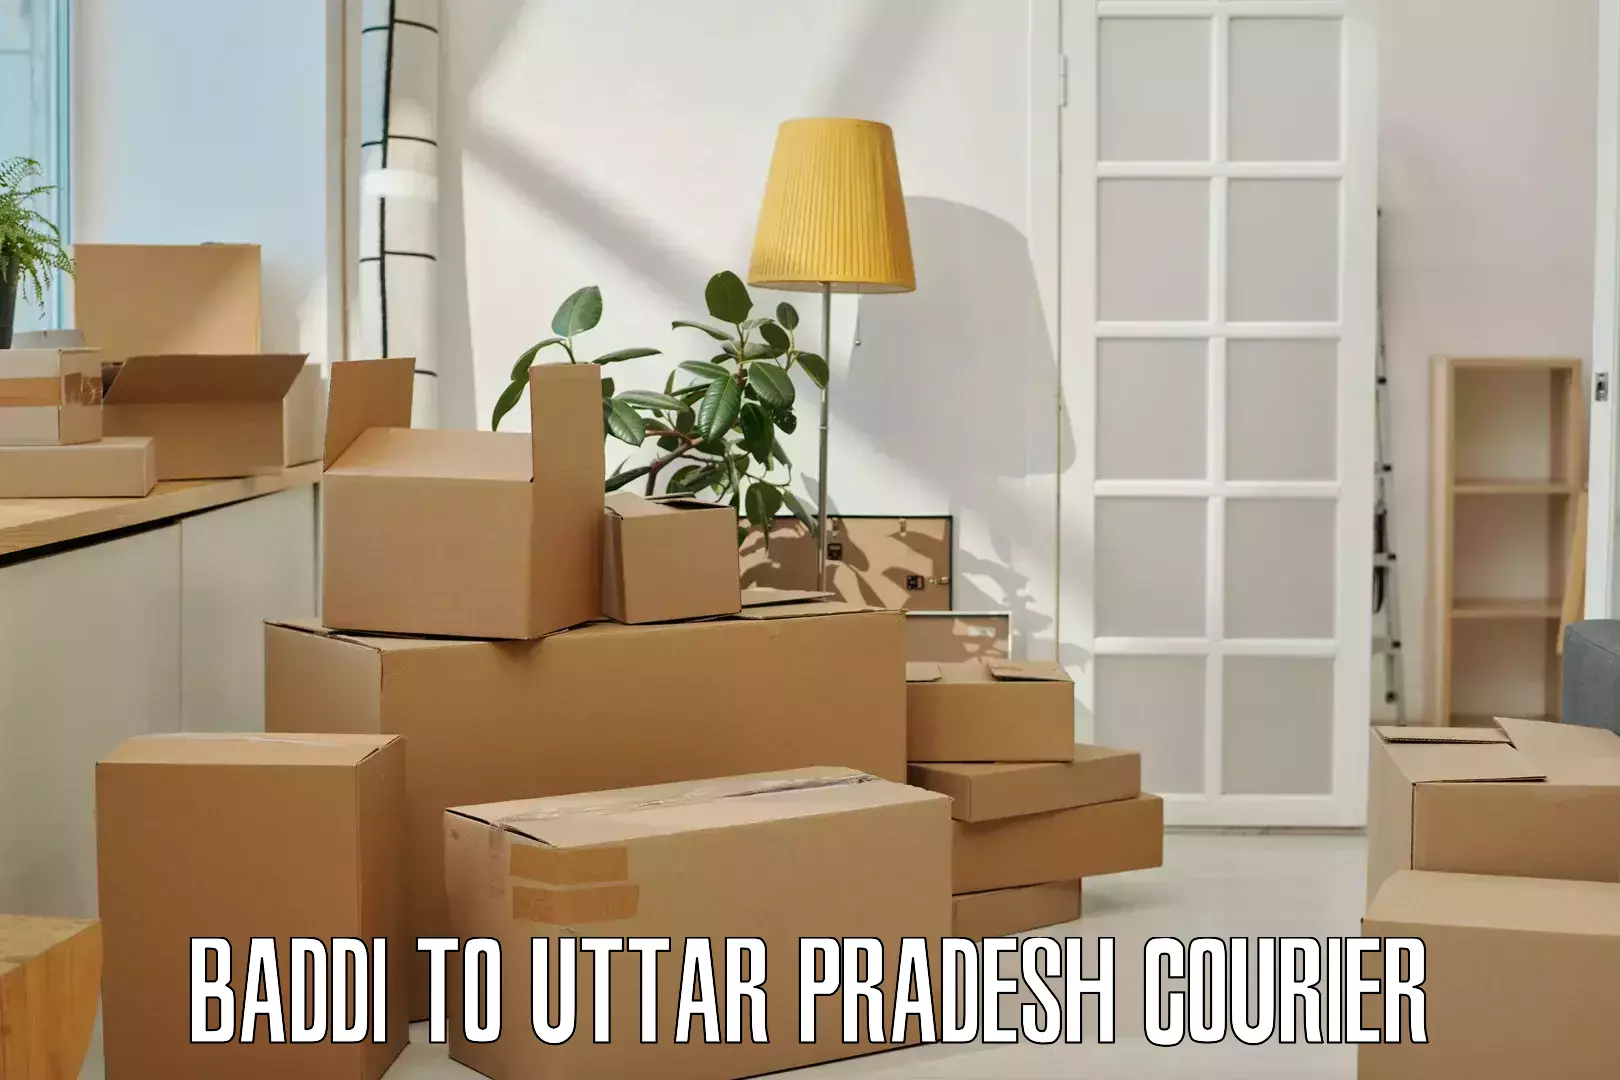 Expedited shipping methods Baddi to Uttar Pradesh